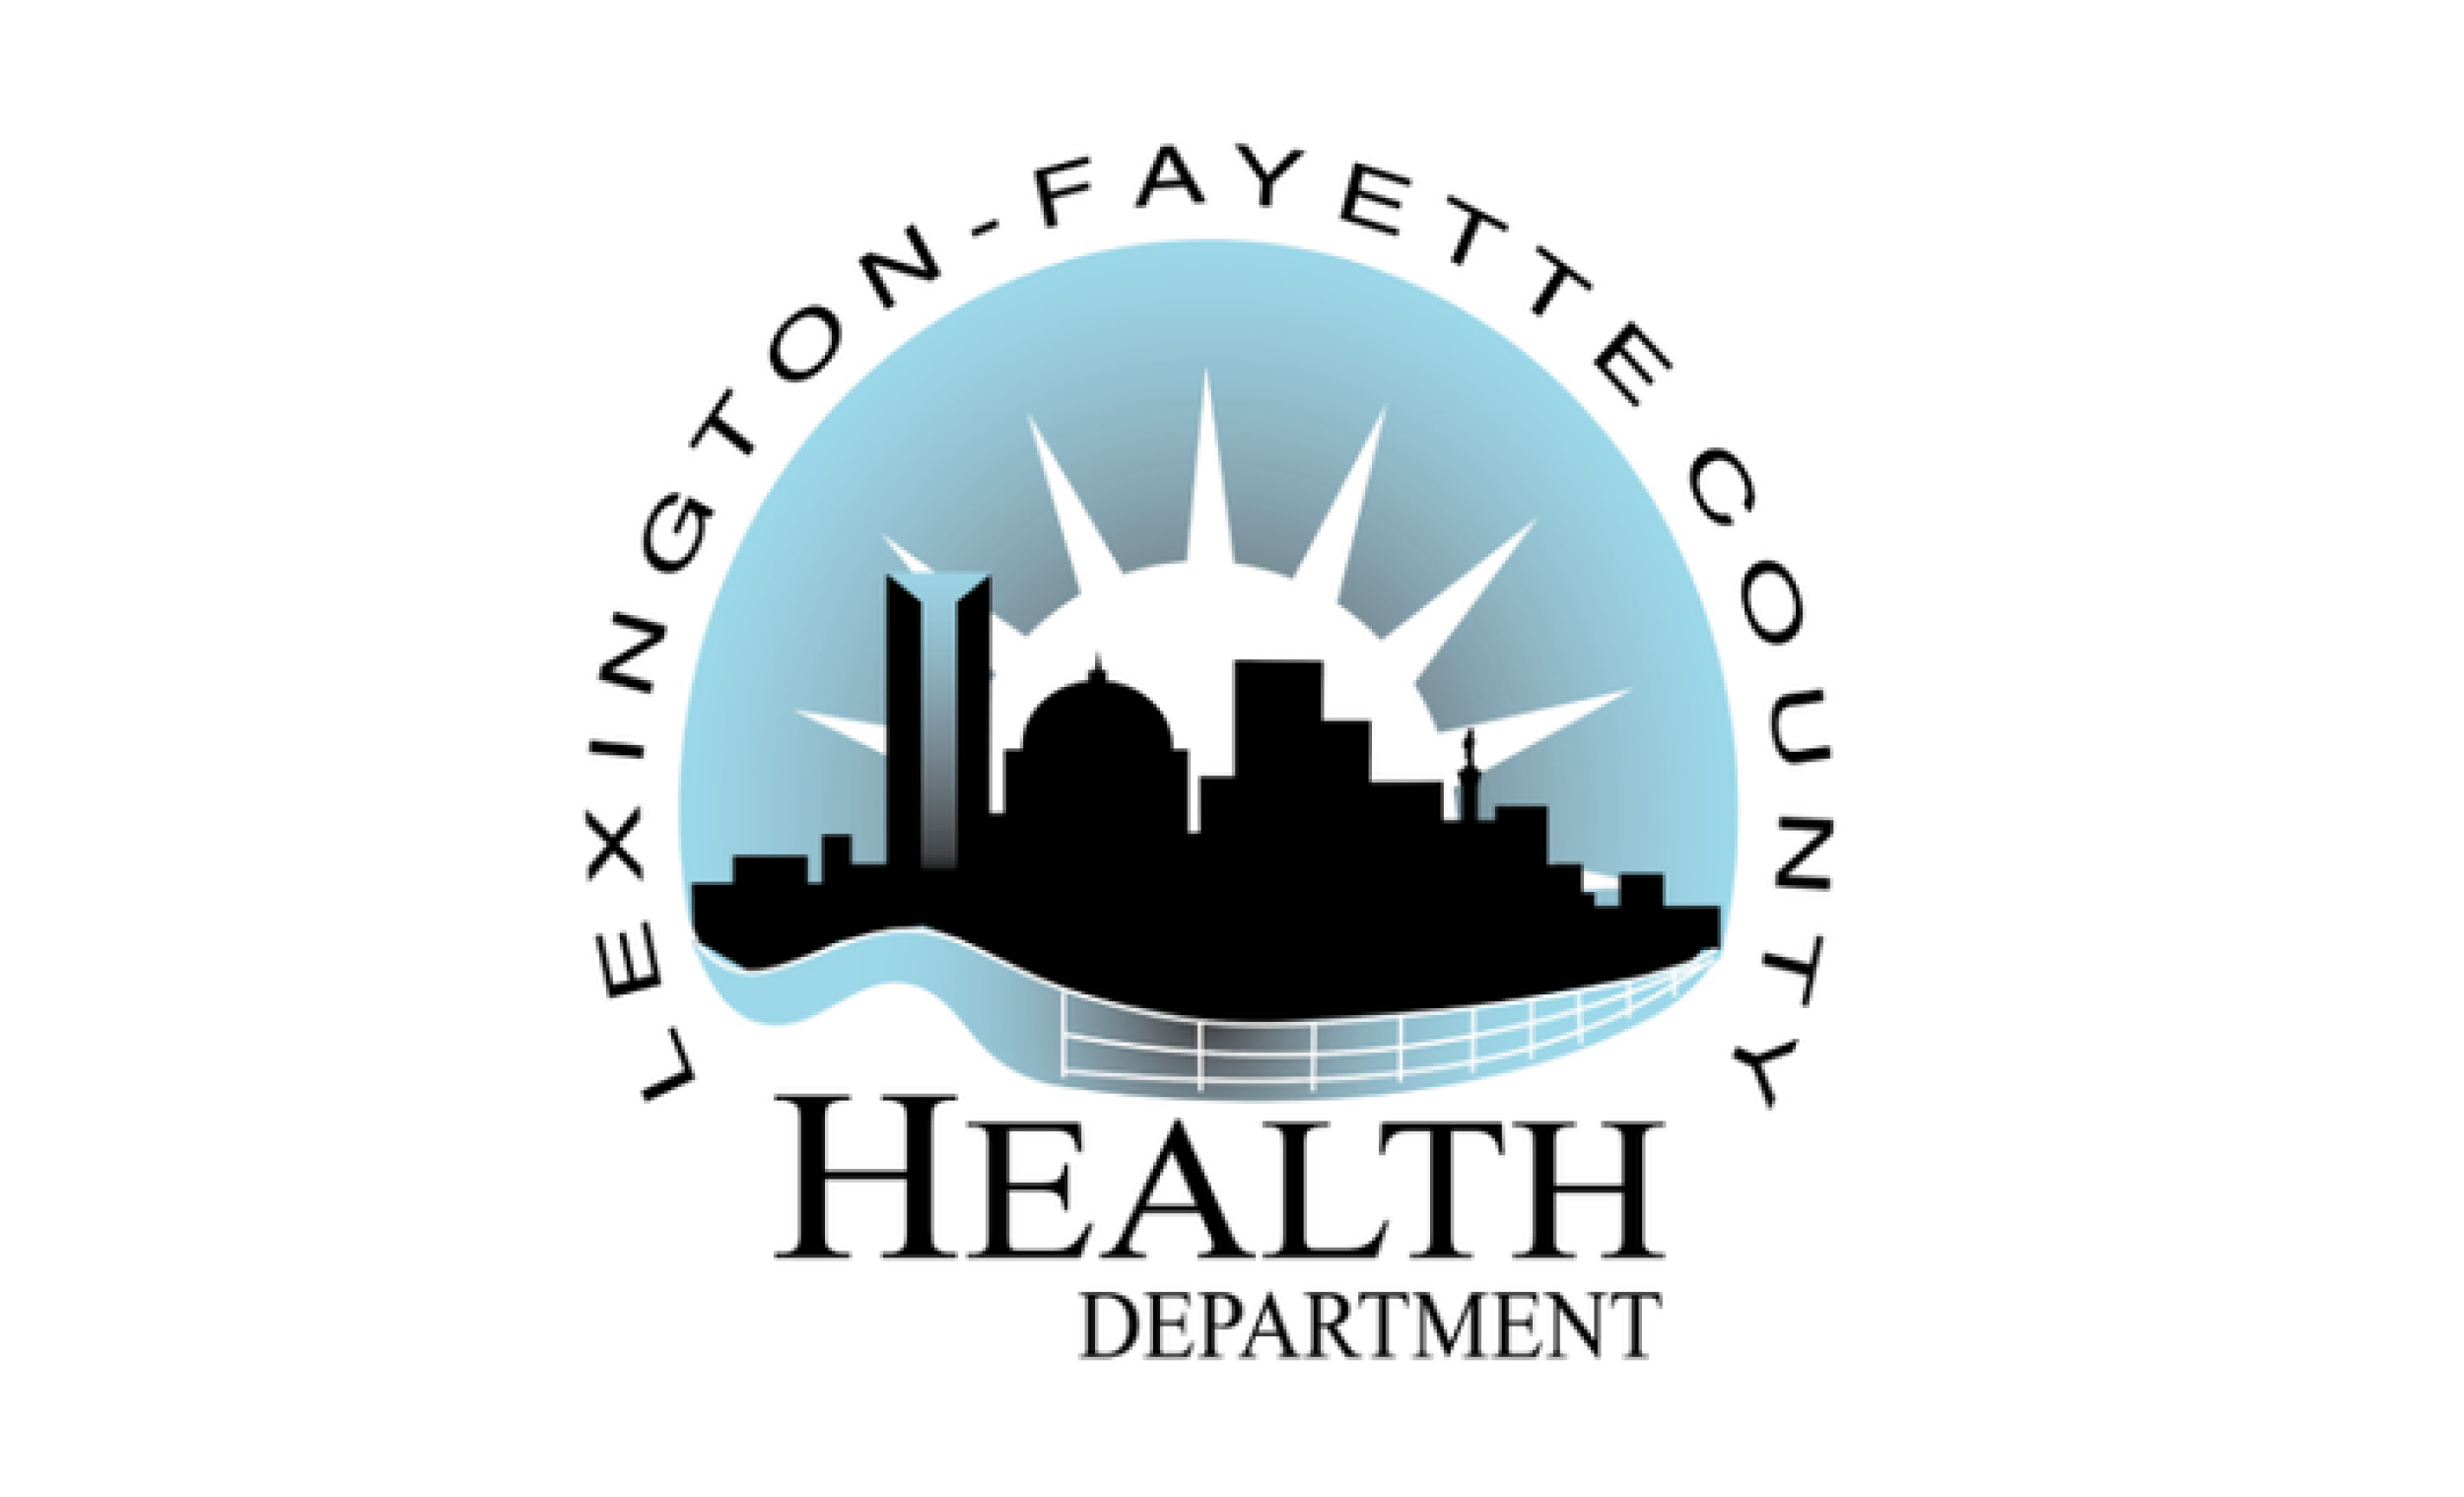 Departamento de Salud del Condado de Lexington Fayette